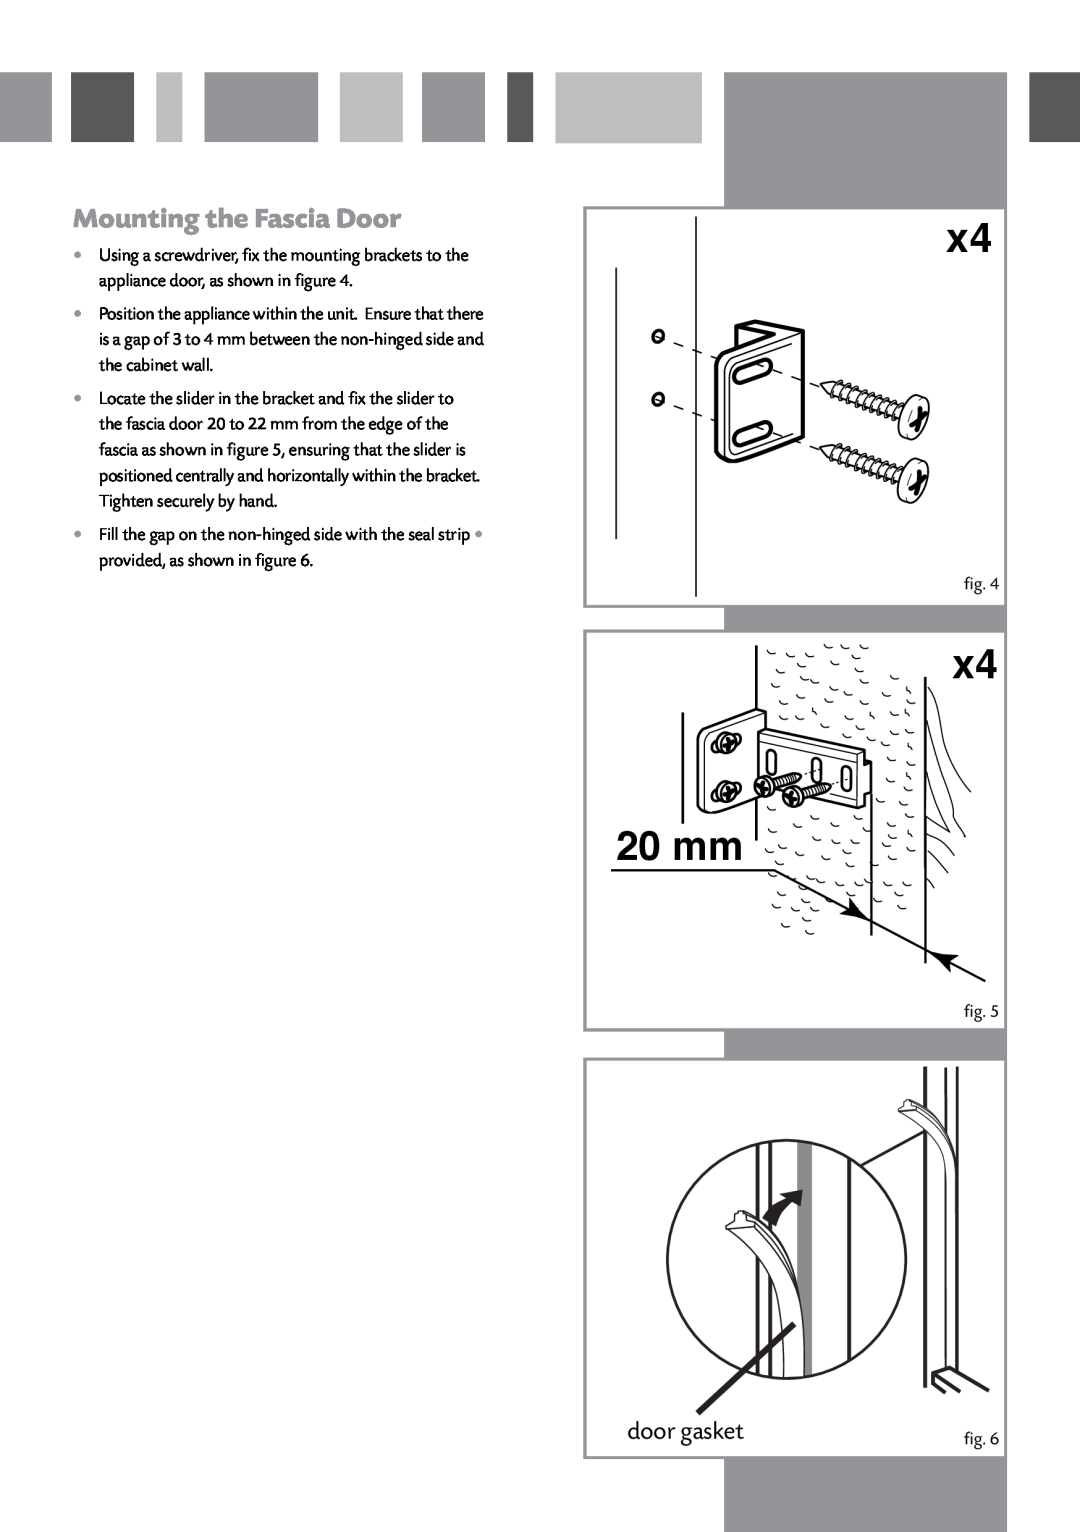 CDA CW897 manual Mounting the Fascia Door, door gasket, 20 mm 